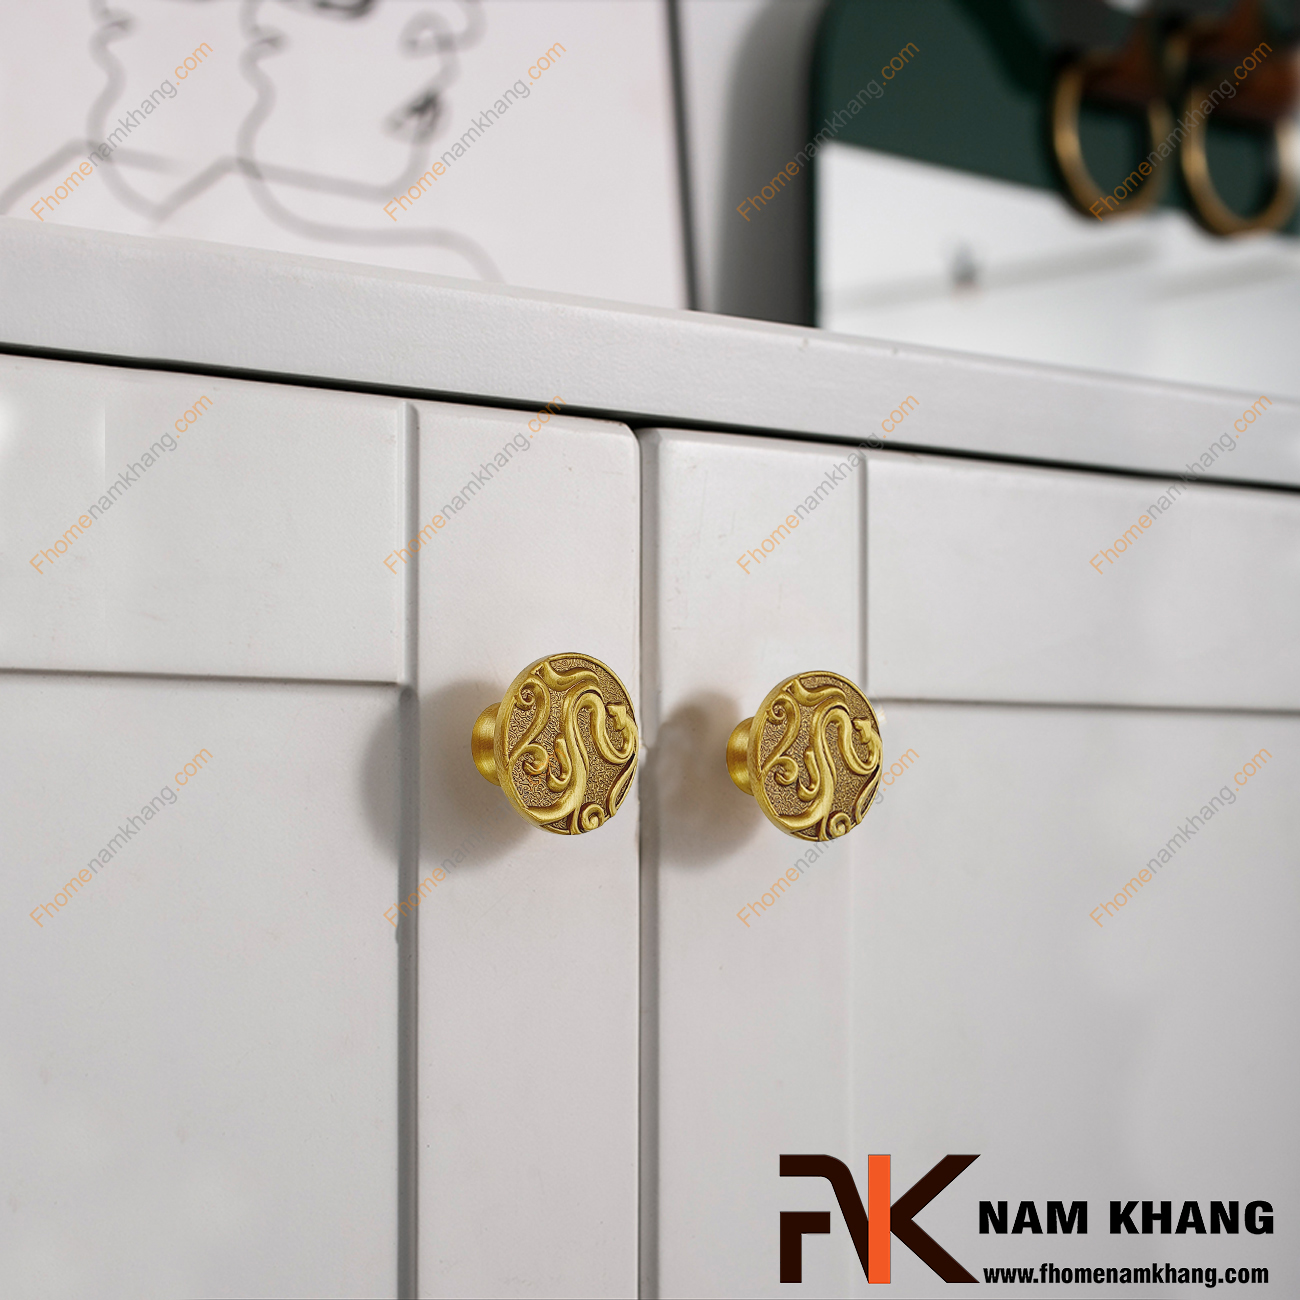  Núm cửa tủ đồng rồng vàng NK452-VM có khuôn dạng nấm tròn họa tiết rồng nổi độc đáo